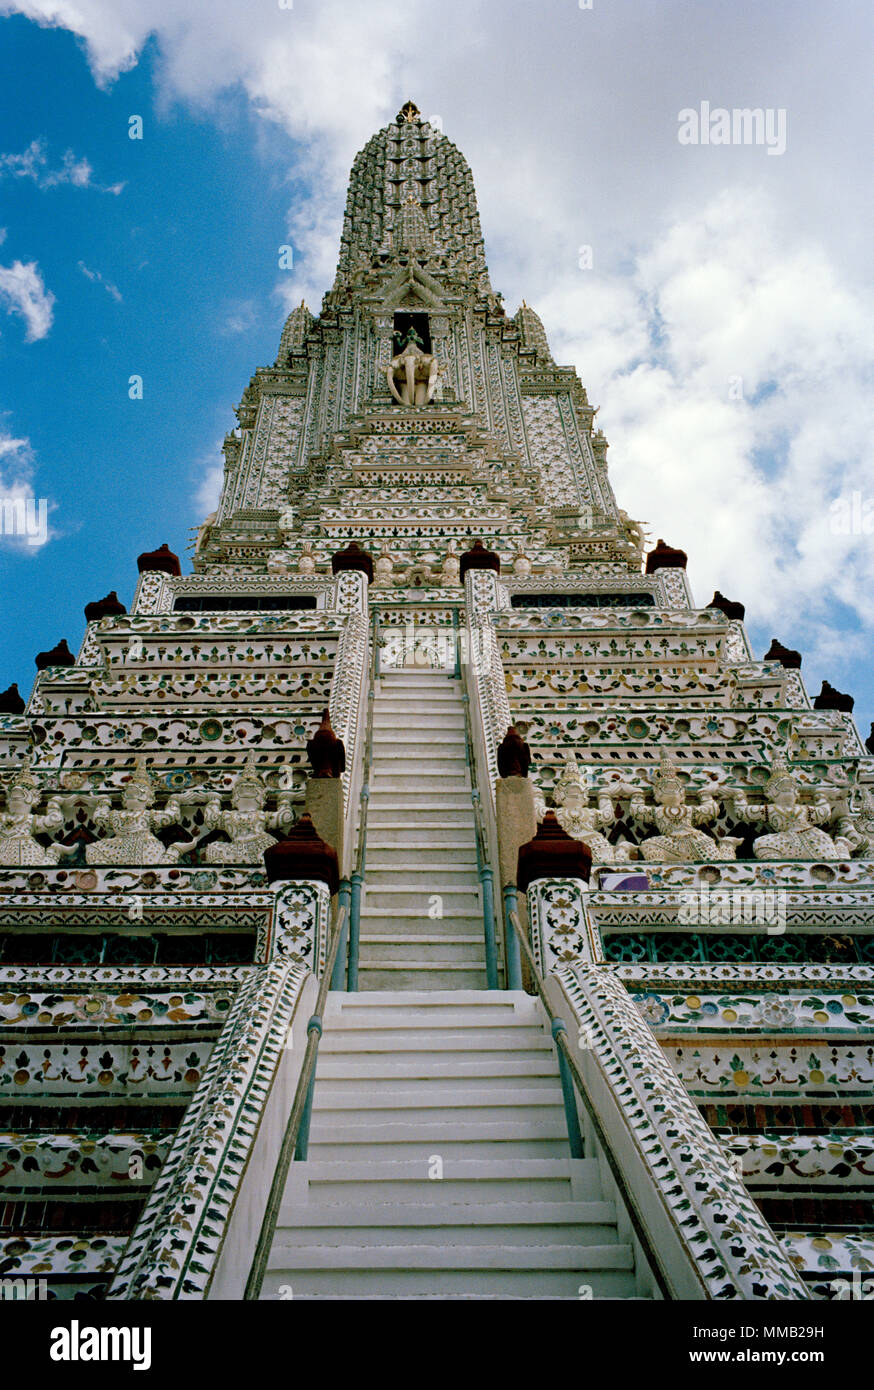 Temple bouddhiste de l'aube - Wat Arun Temple à Bangkok Yai Thonburi à Bangkok en Thaïlande en Asie du Sud-Est Extrême-Orient. Billet d'art bouddhisme Couleur Couleur Banque D'Images